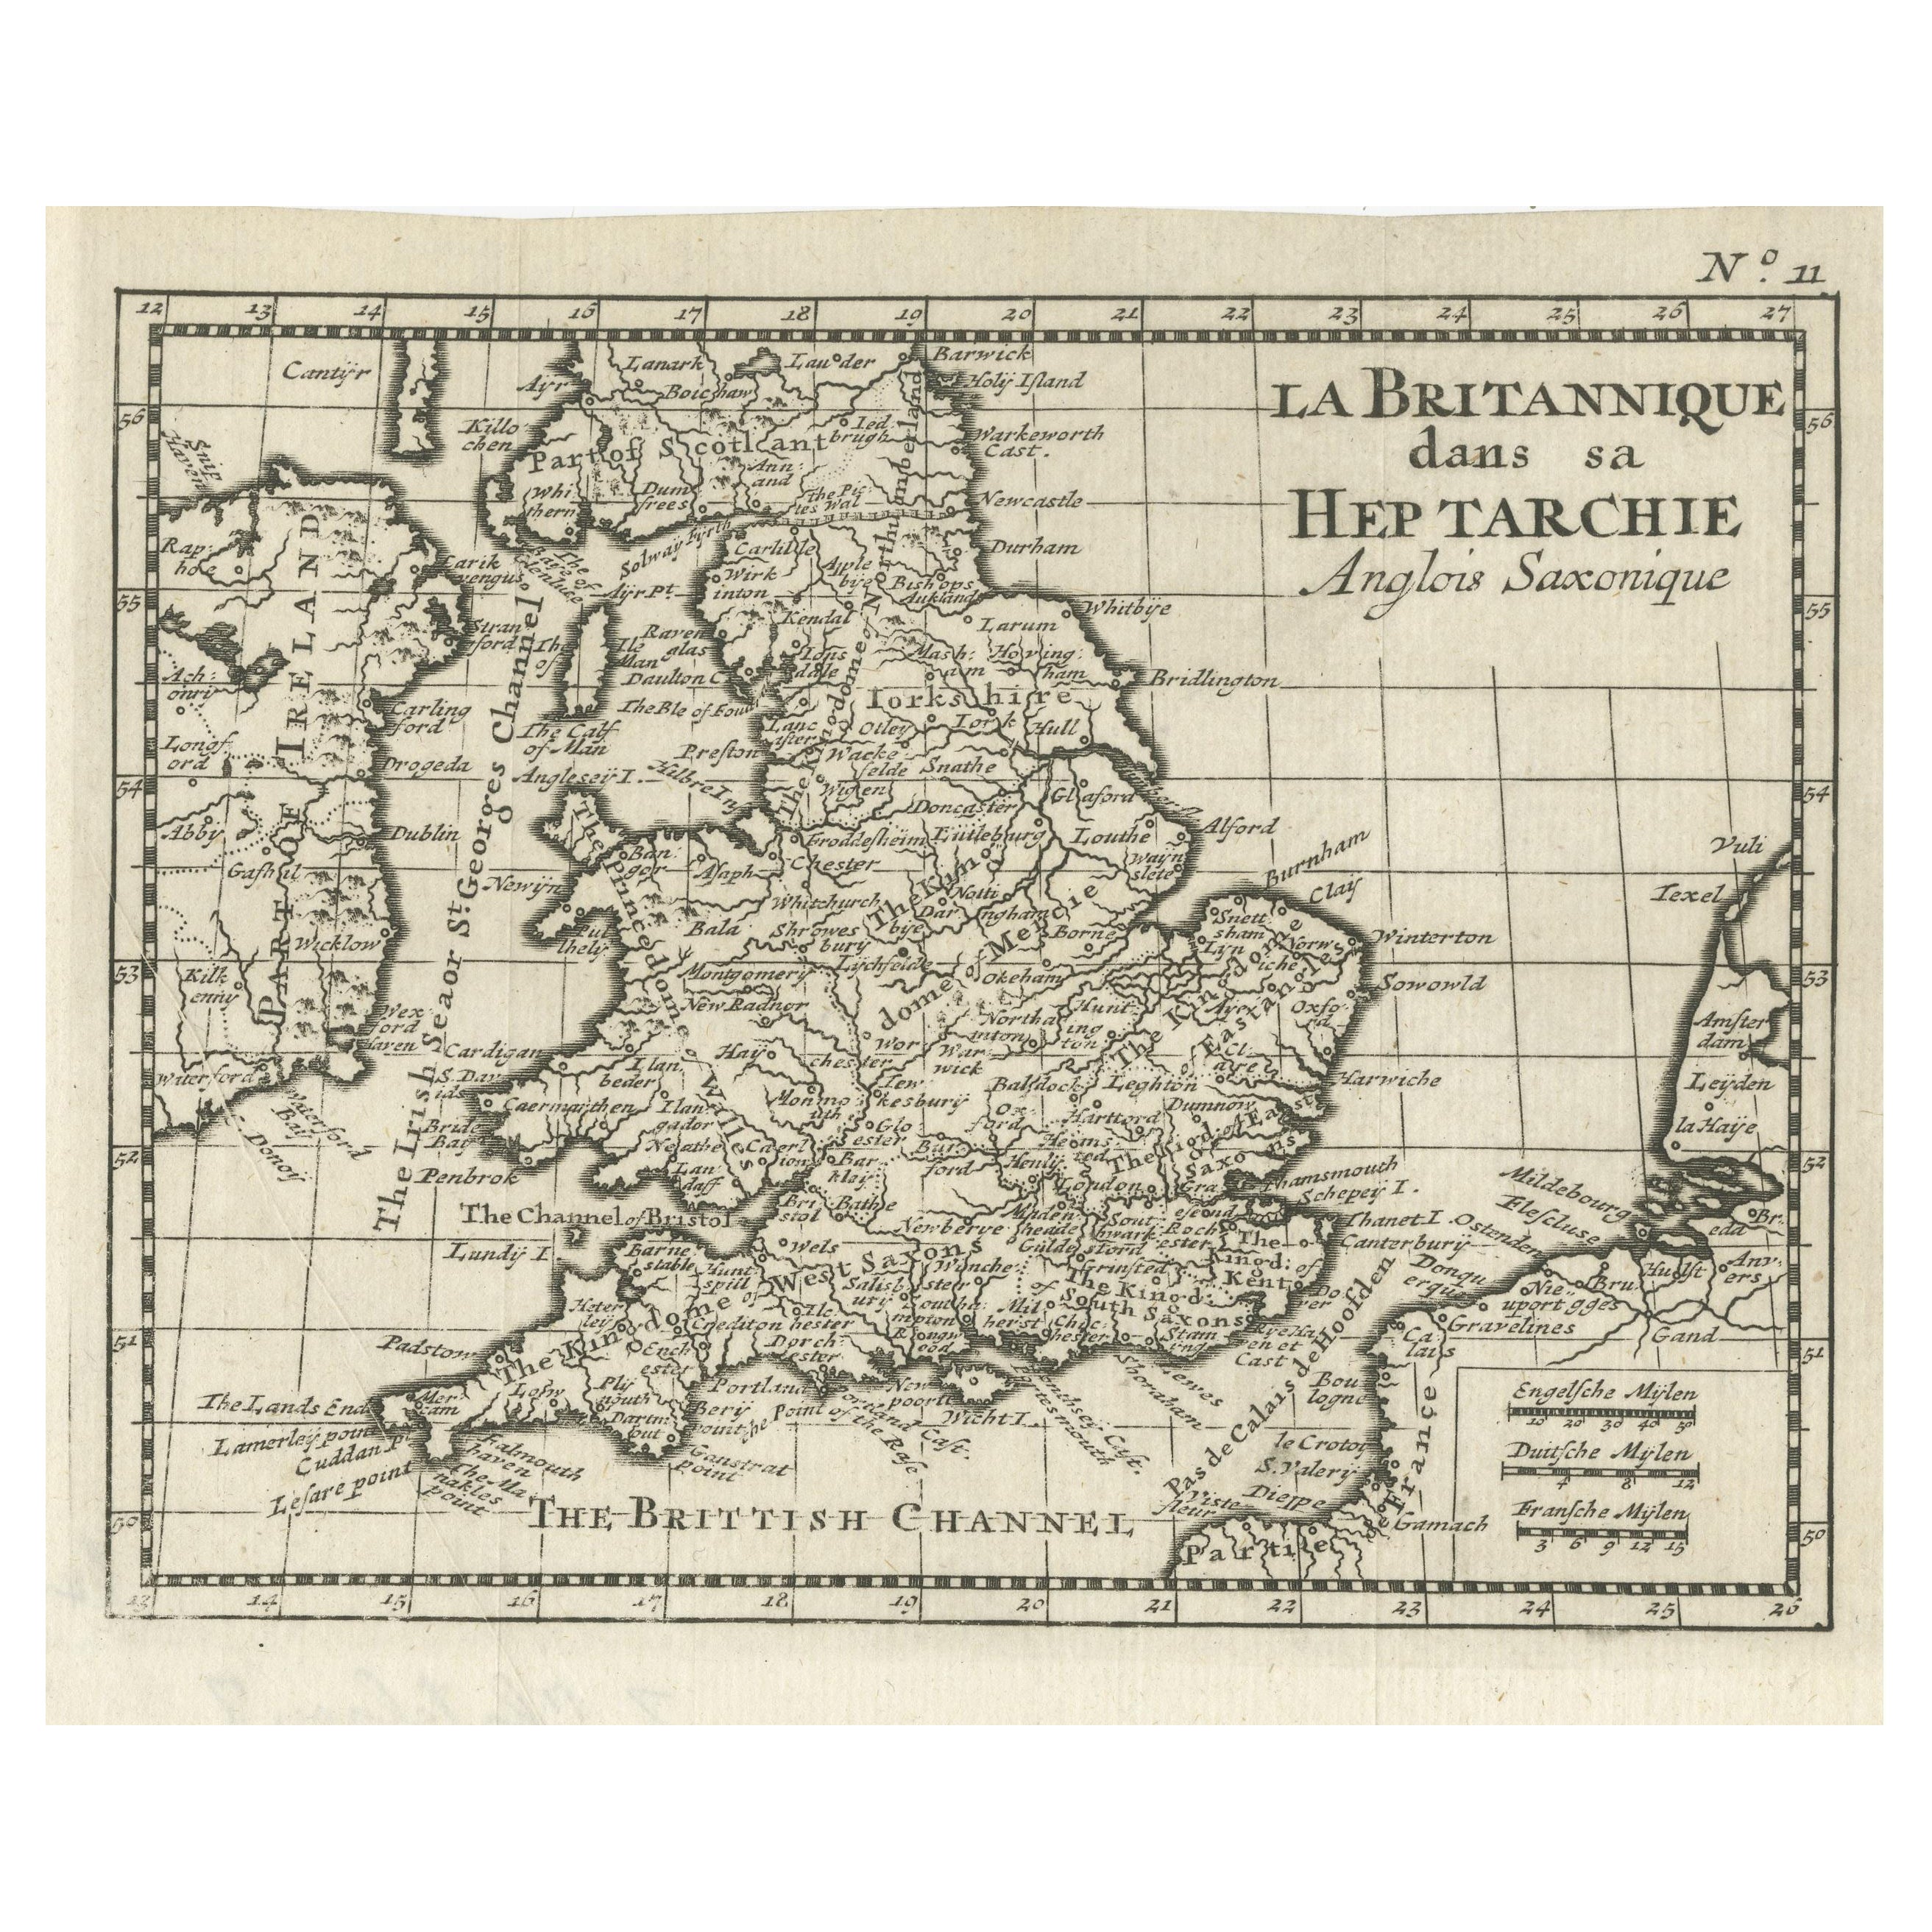 Antike Karte von England und Wales, die während der Heptarchy-Zeit